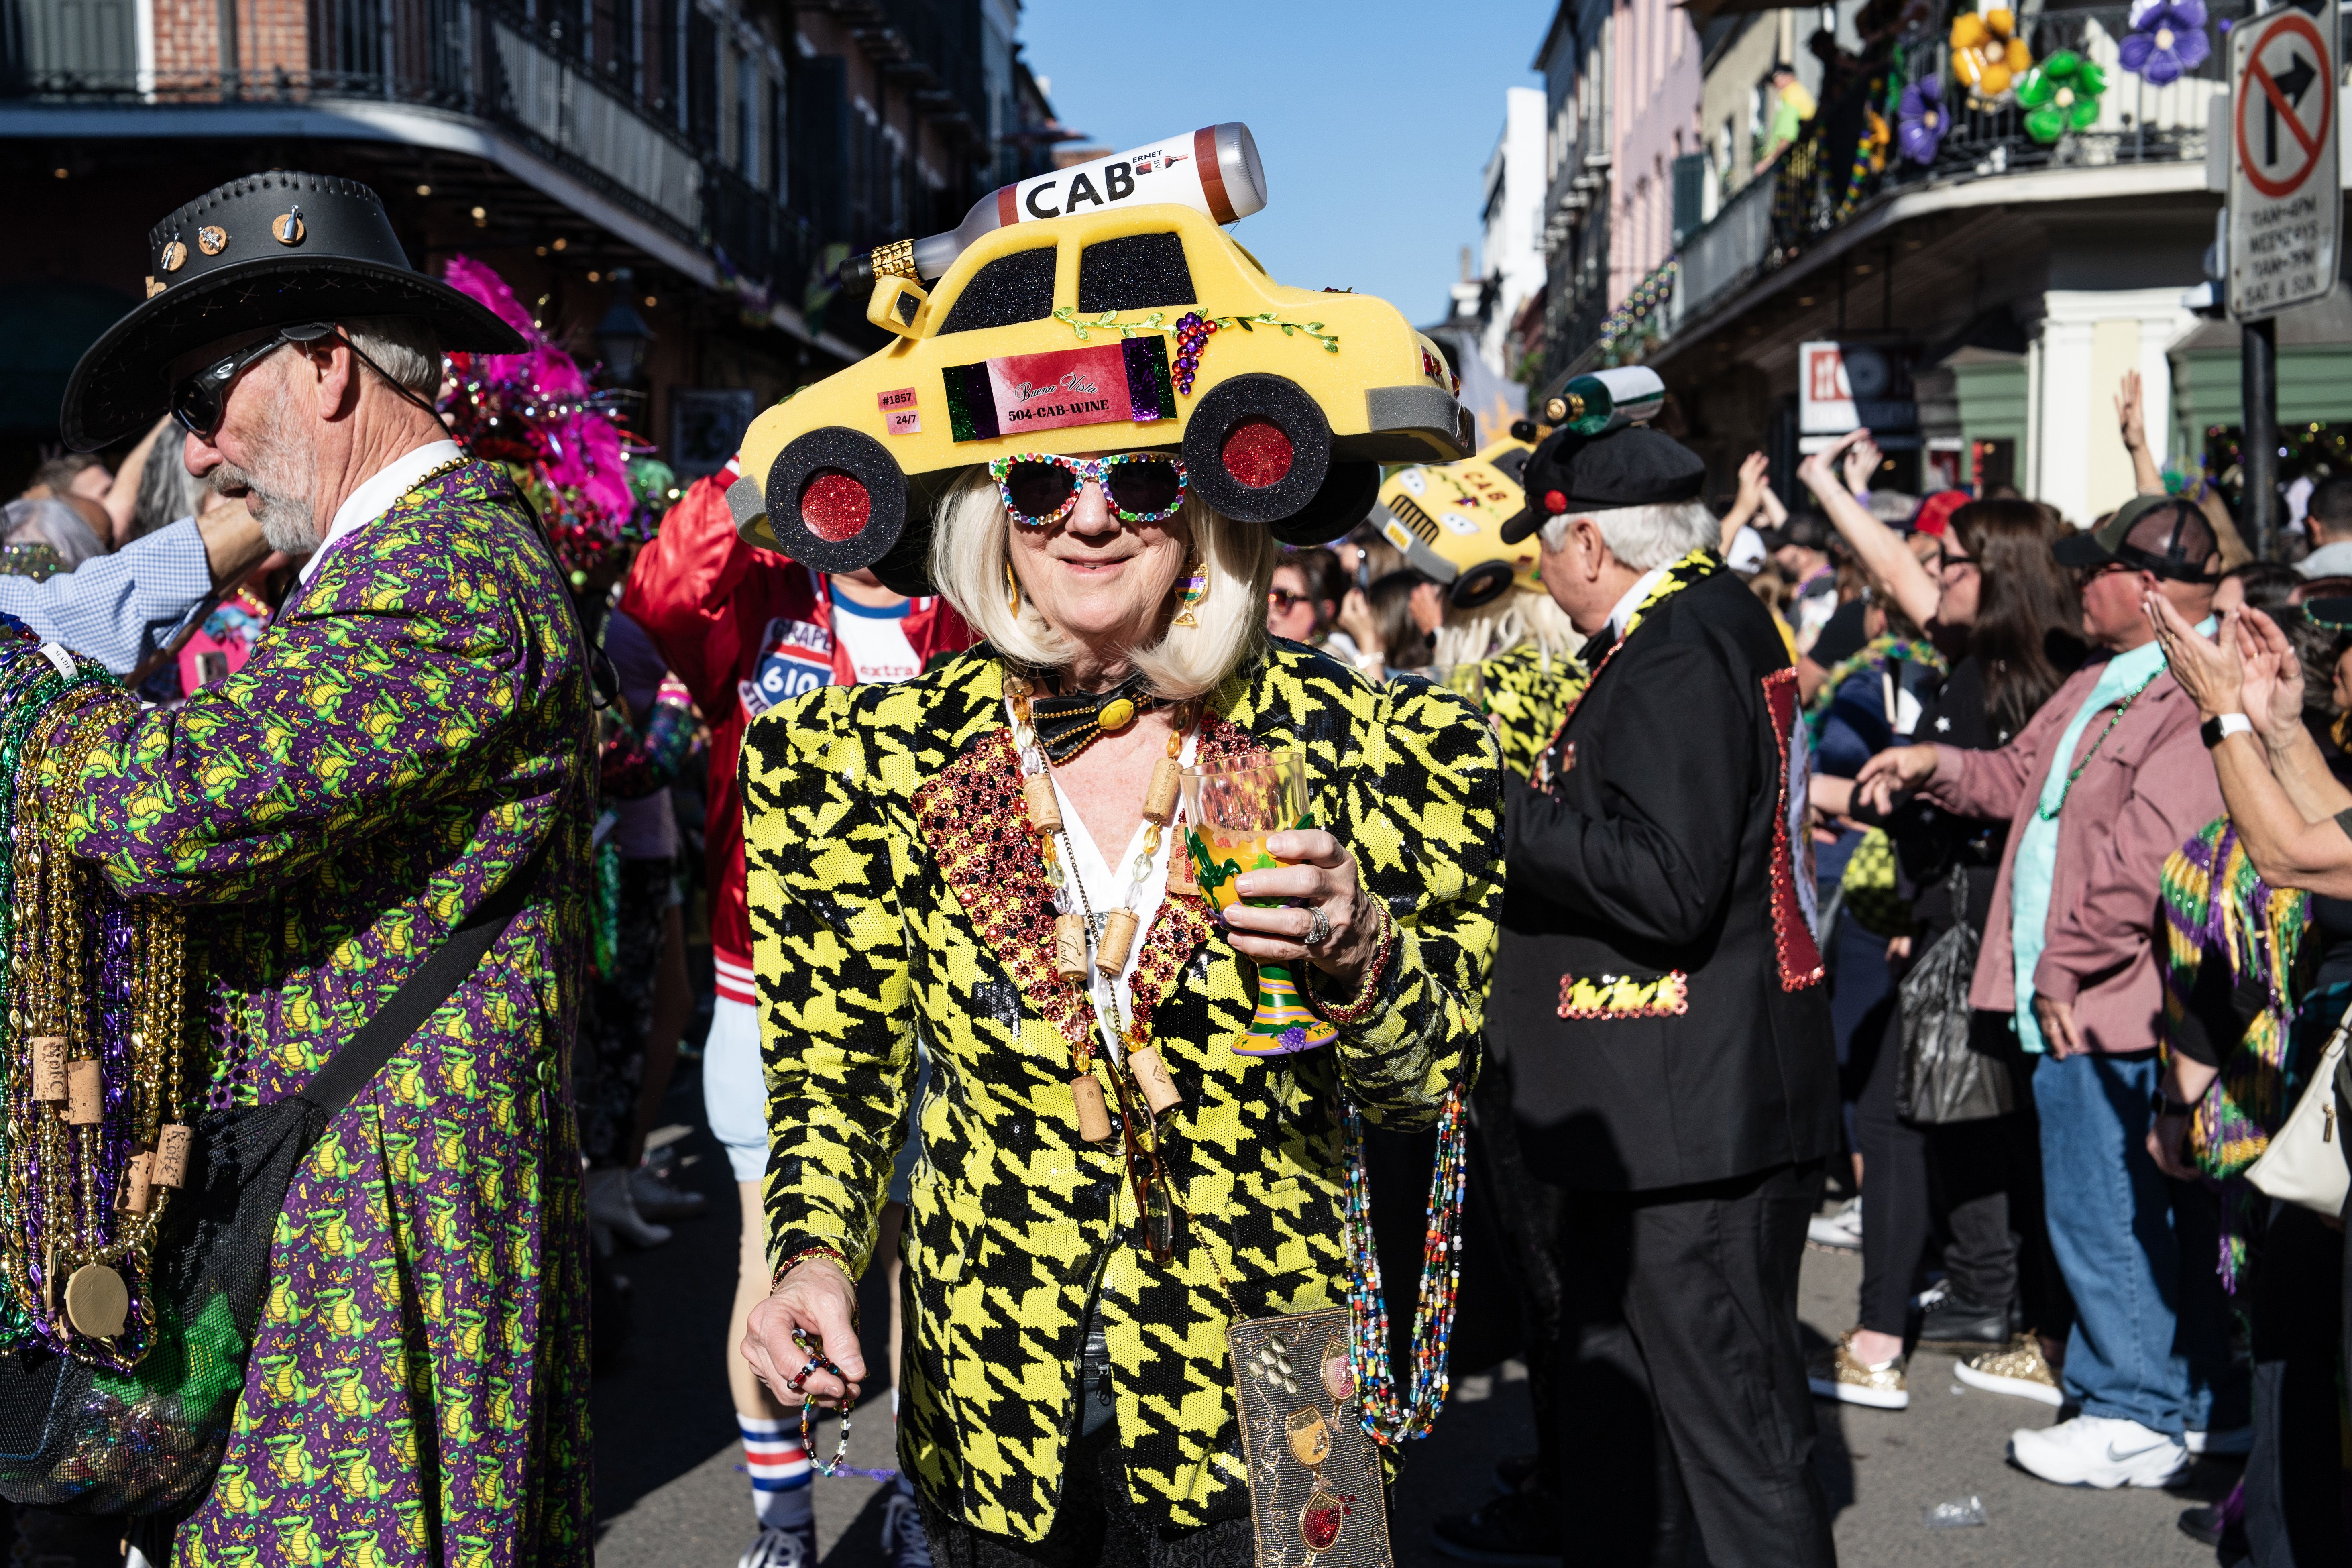 A parade reveler dressed like a taxi cab/cabernet mashup.